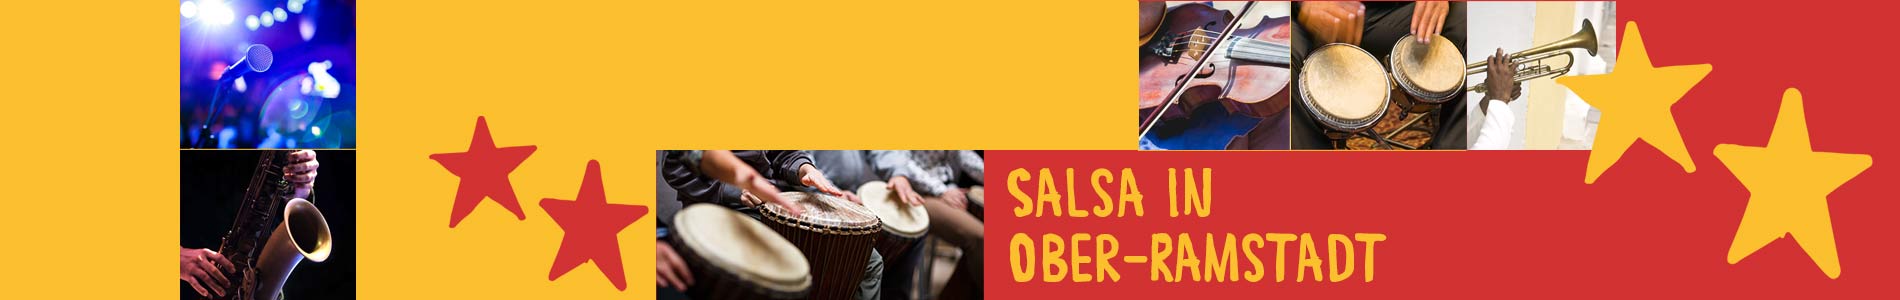 Salsa in Ober-Ramstadt – Salsa lernen und tanzen, Tanzkurse, Partys, Veranstaltungen